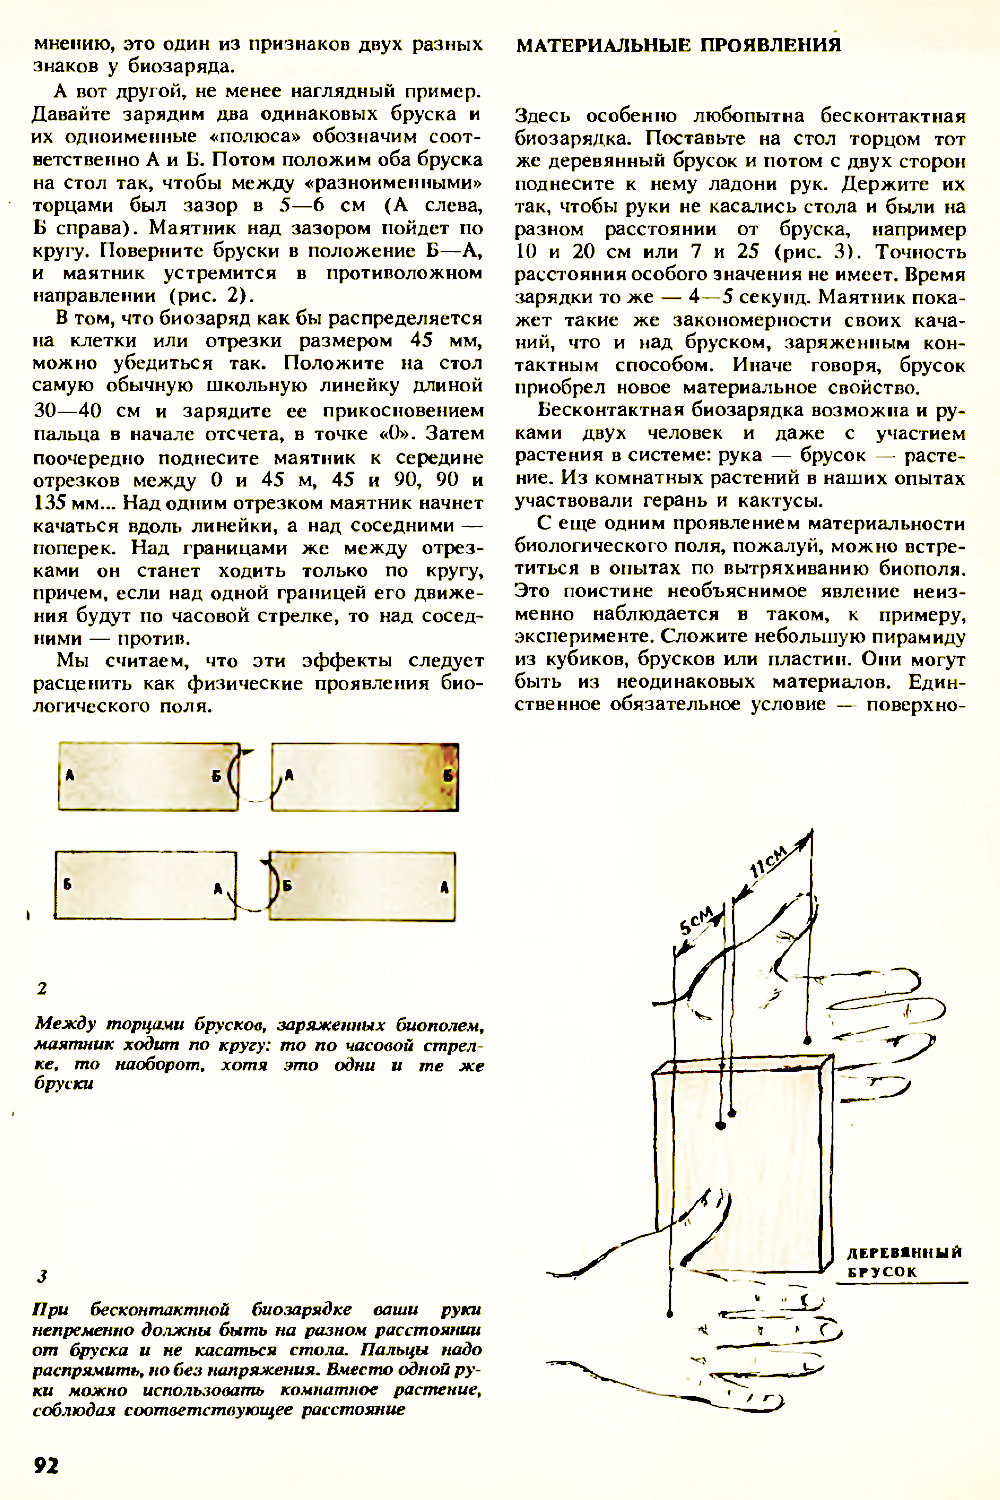 Странные проявления биополя. Н. Адырхаев. Химия и жизнь, 1990, №11, с.91-94. Фотокопия №2